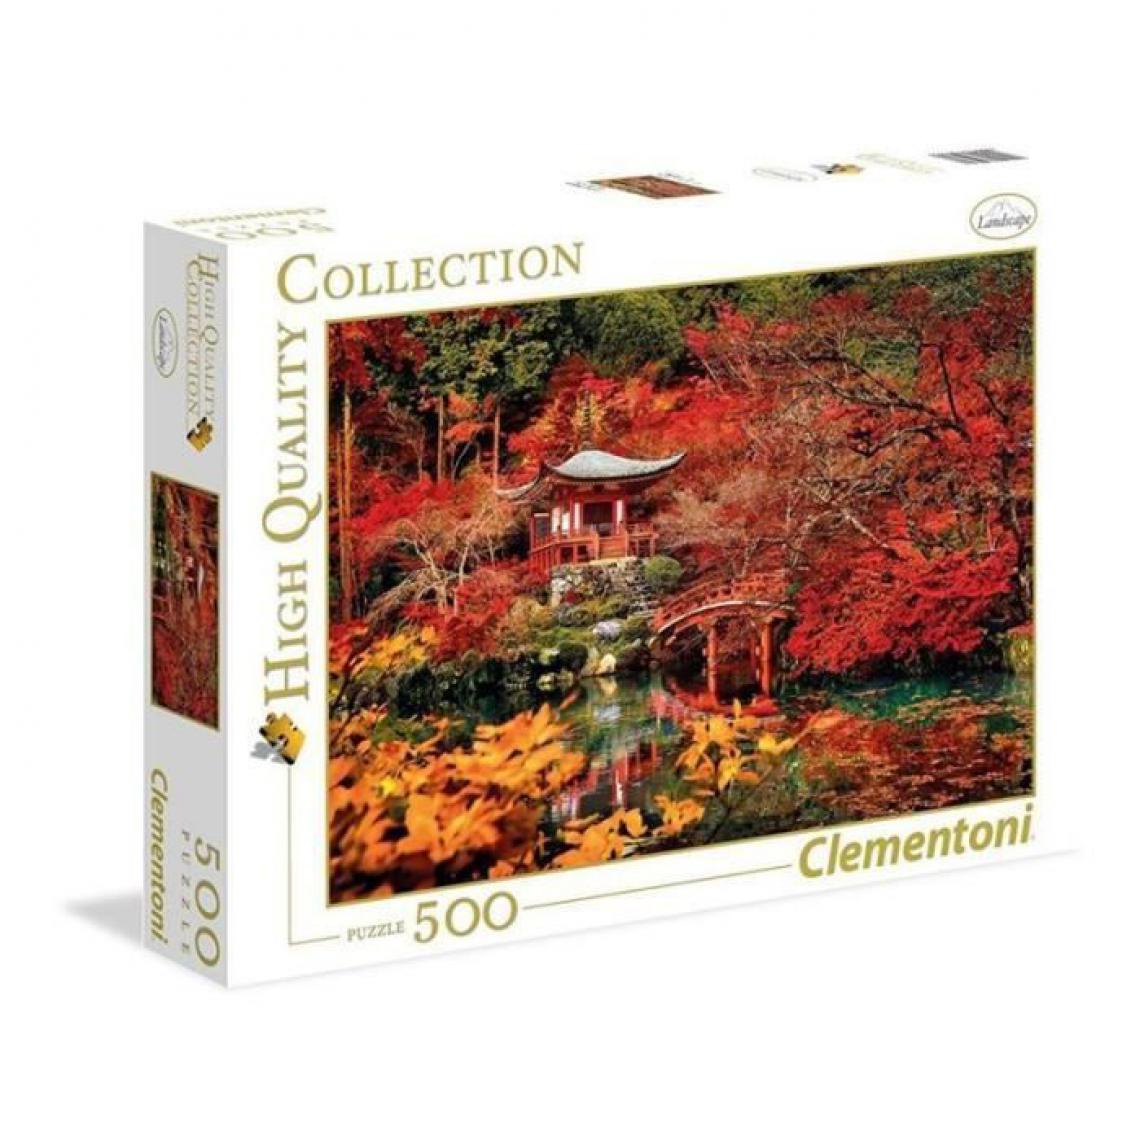 Clementoni - PUZZLE 500 pieces - Orient Dream - 49 X 36 cm - Animaux